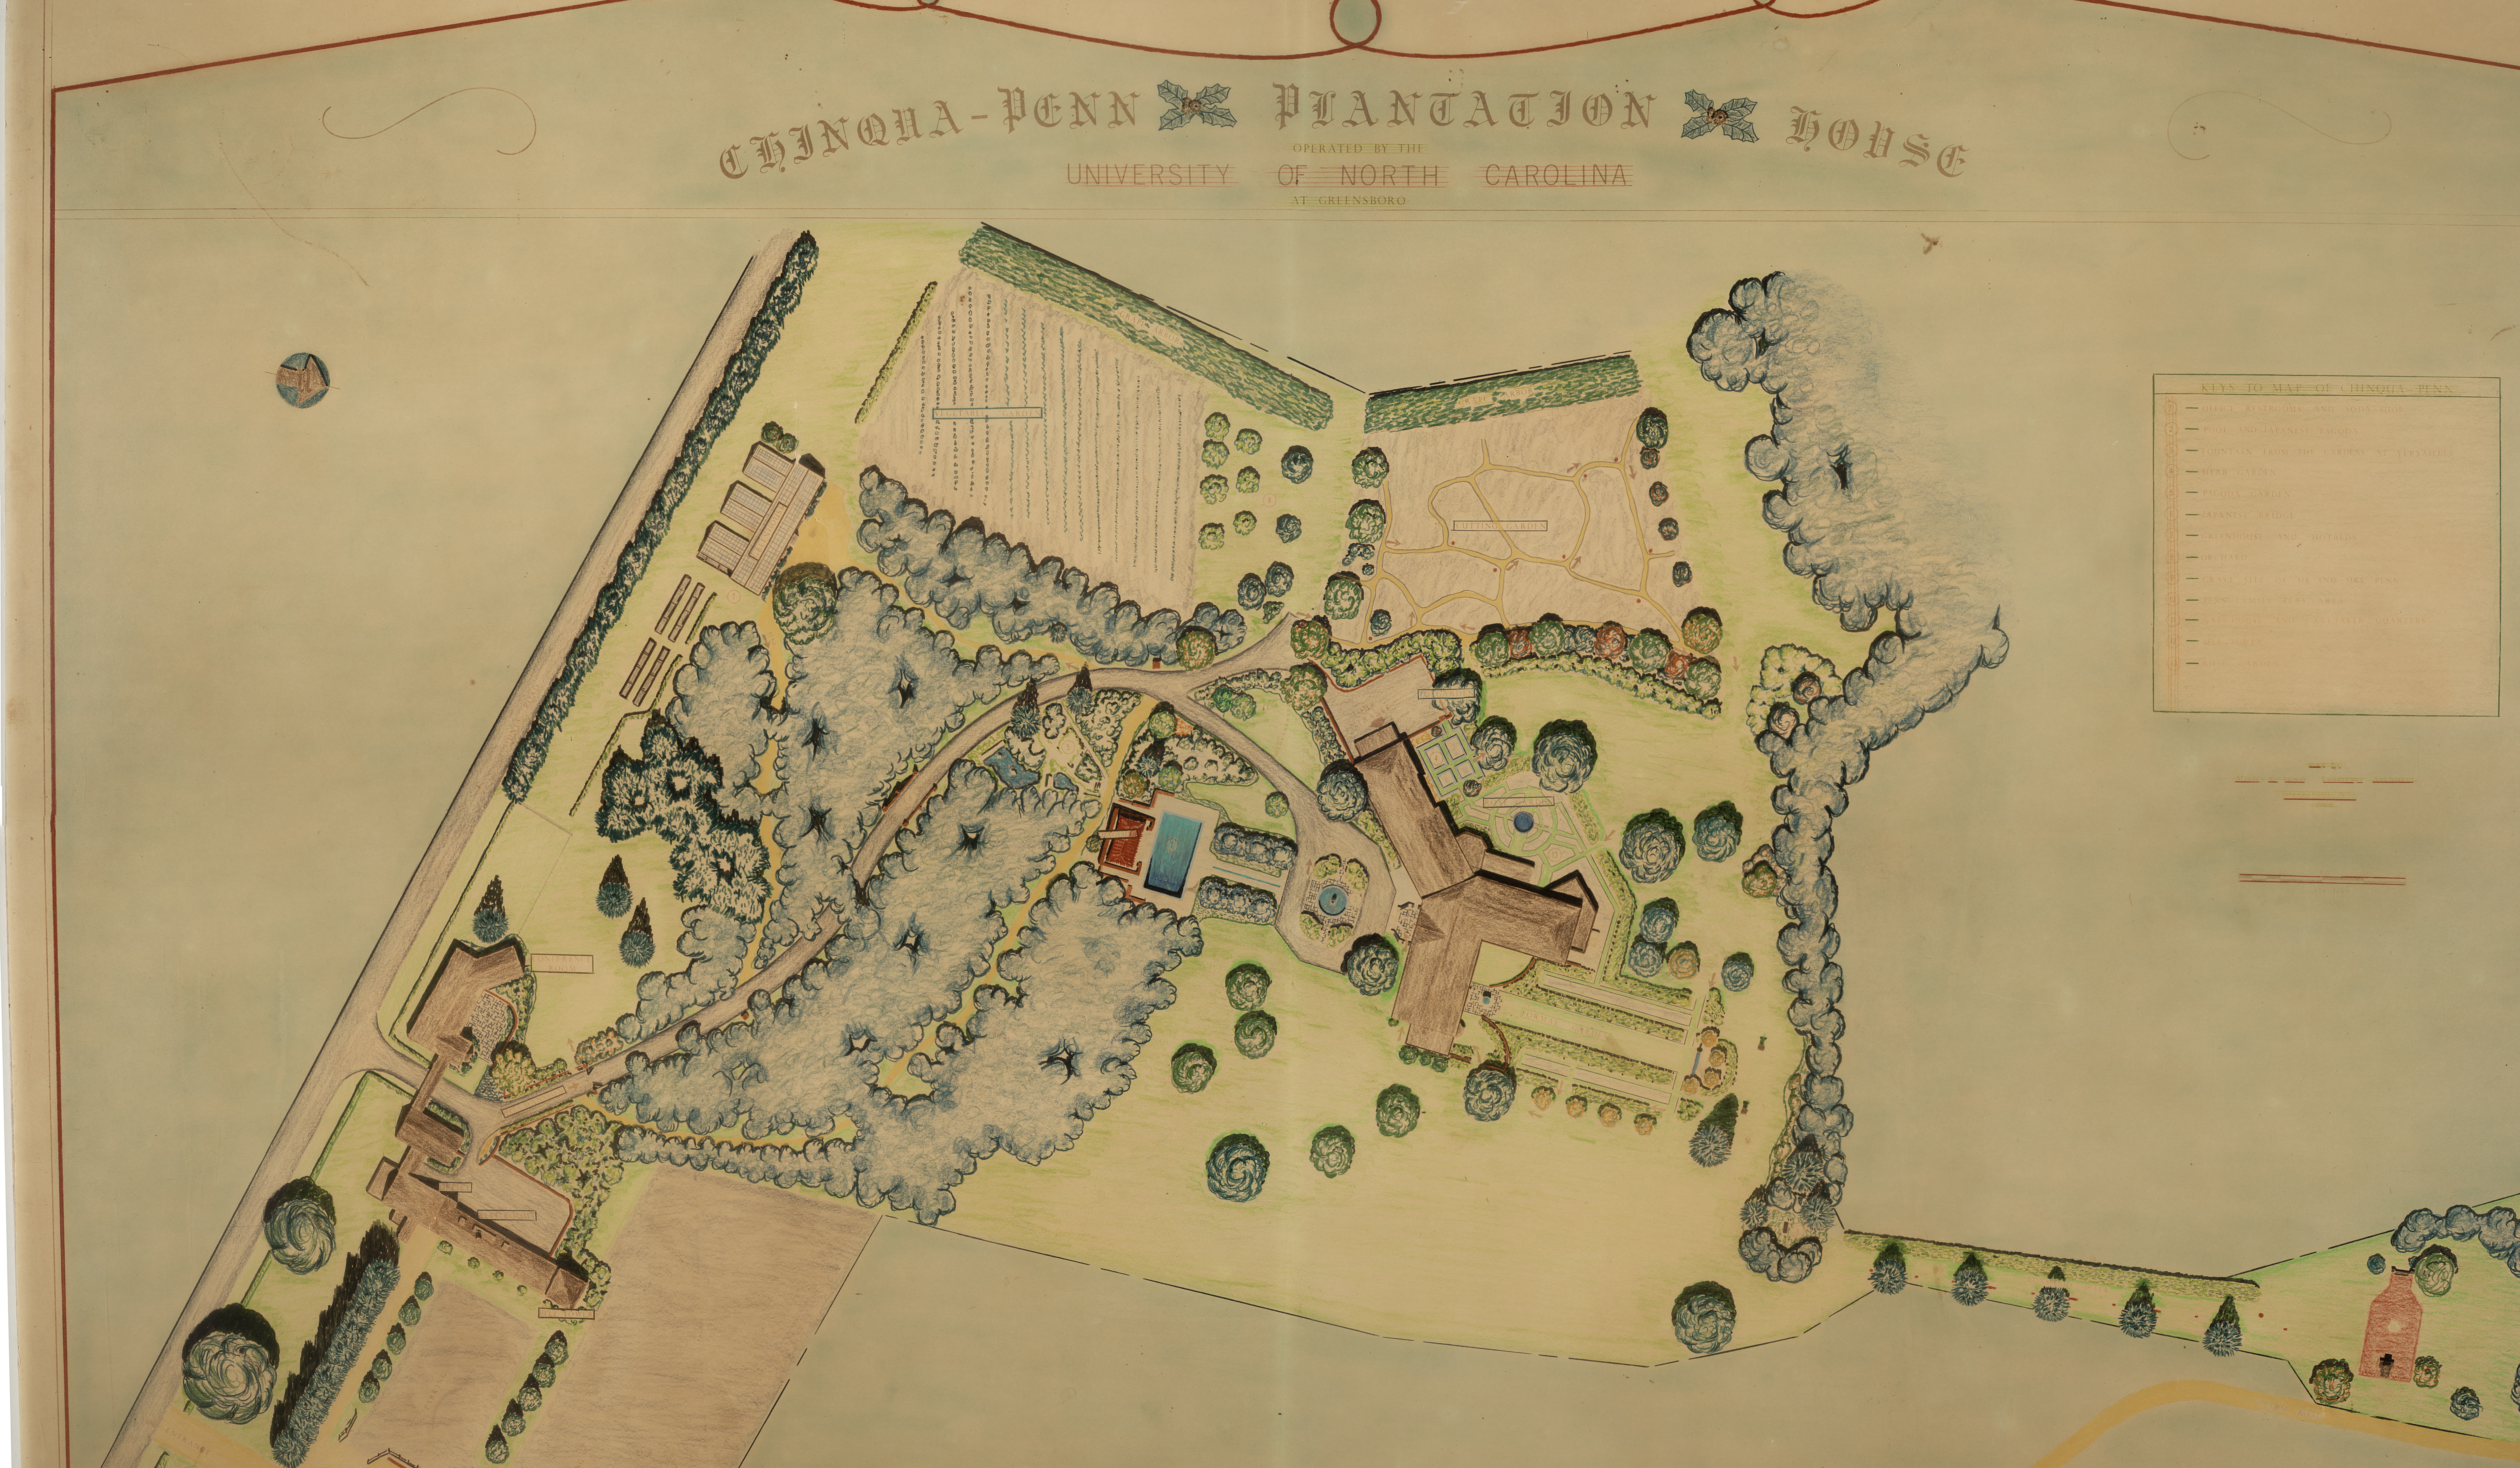 Map of Chinqua-Penn Plantation House, Operated by the University of North Carolina at Greensboro, circa 1965